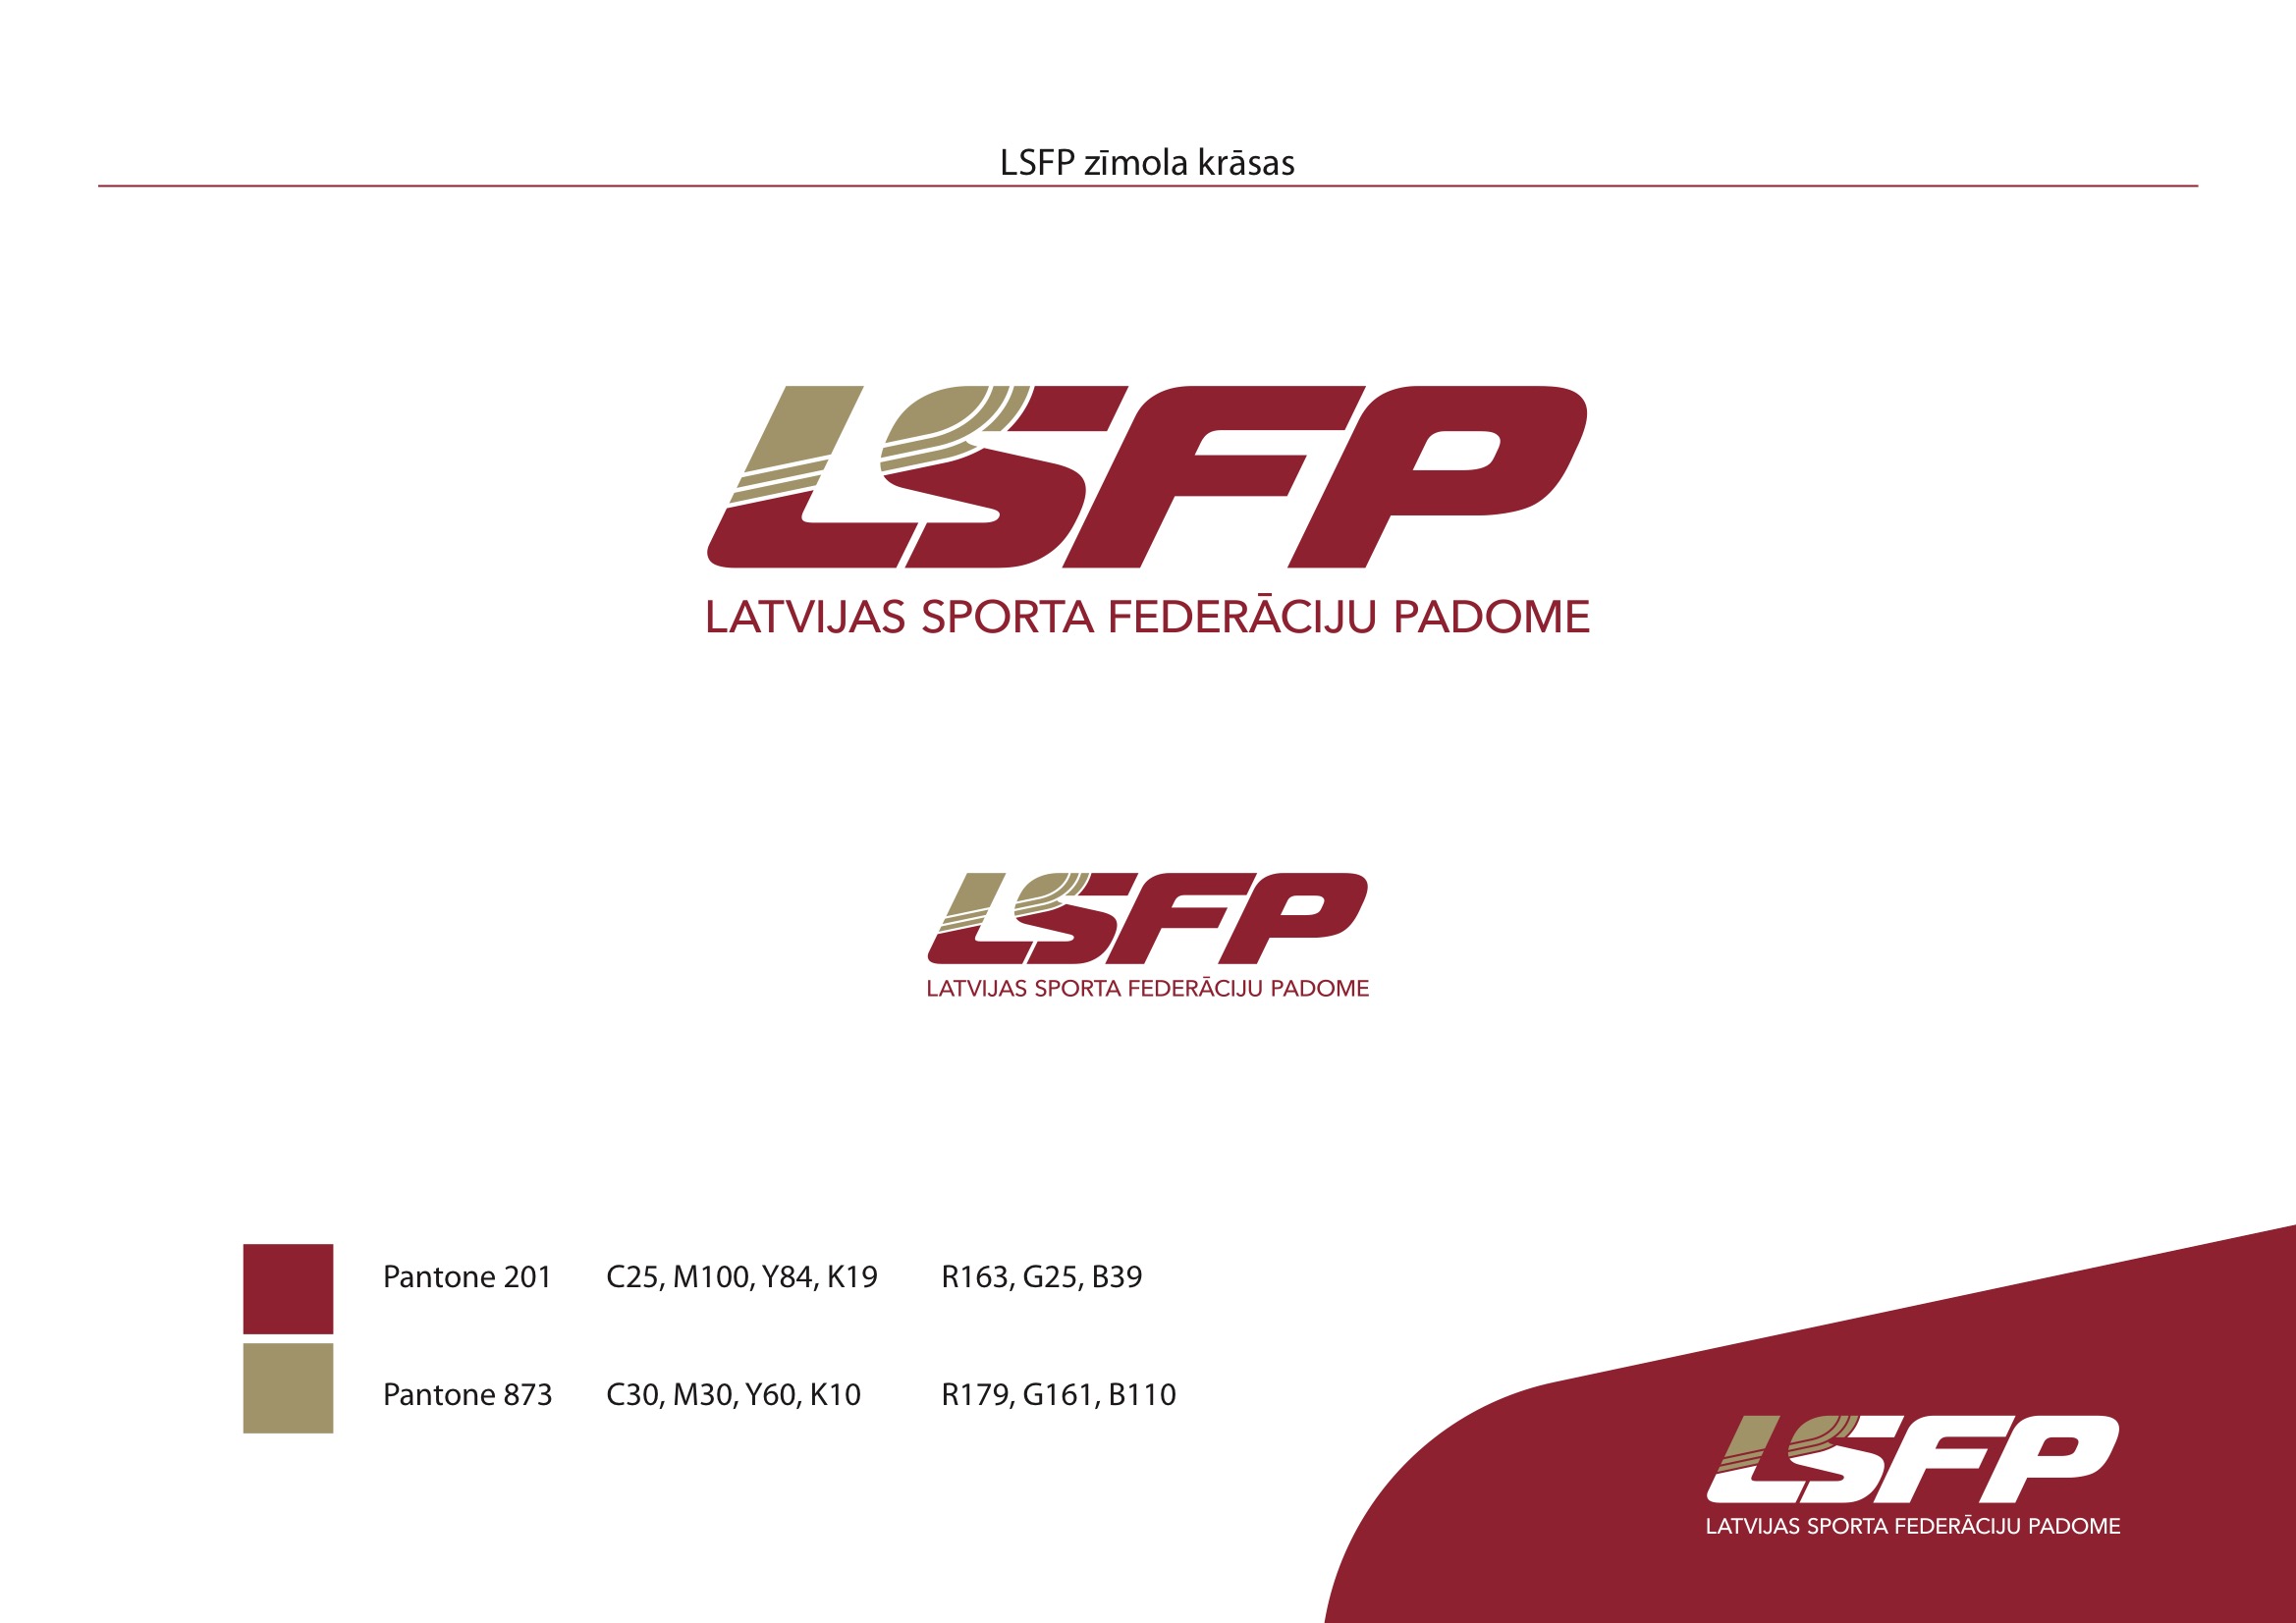 LSFP_logo_krasas 1